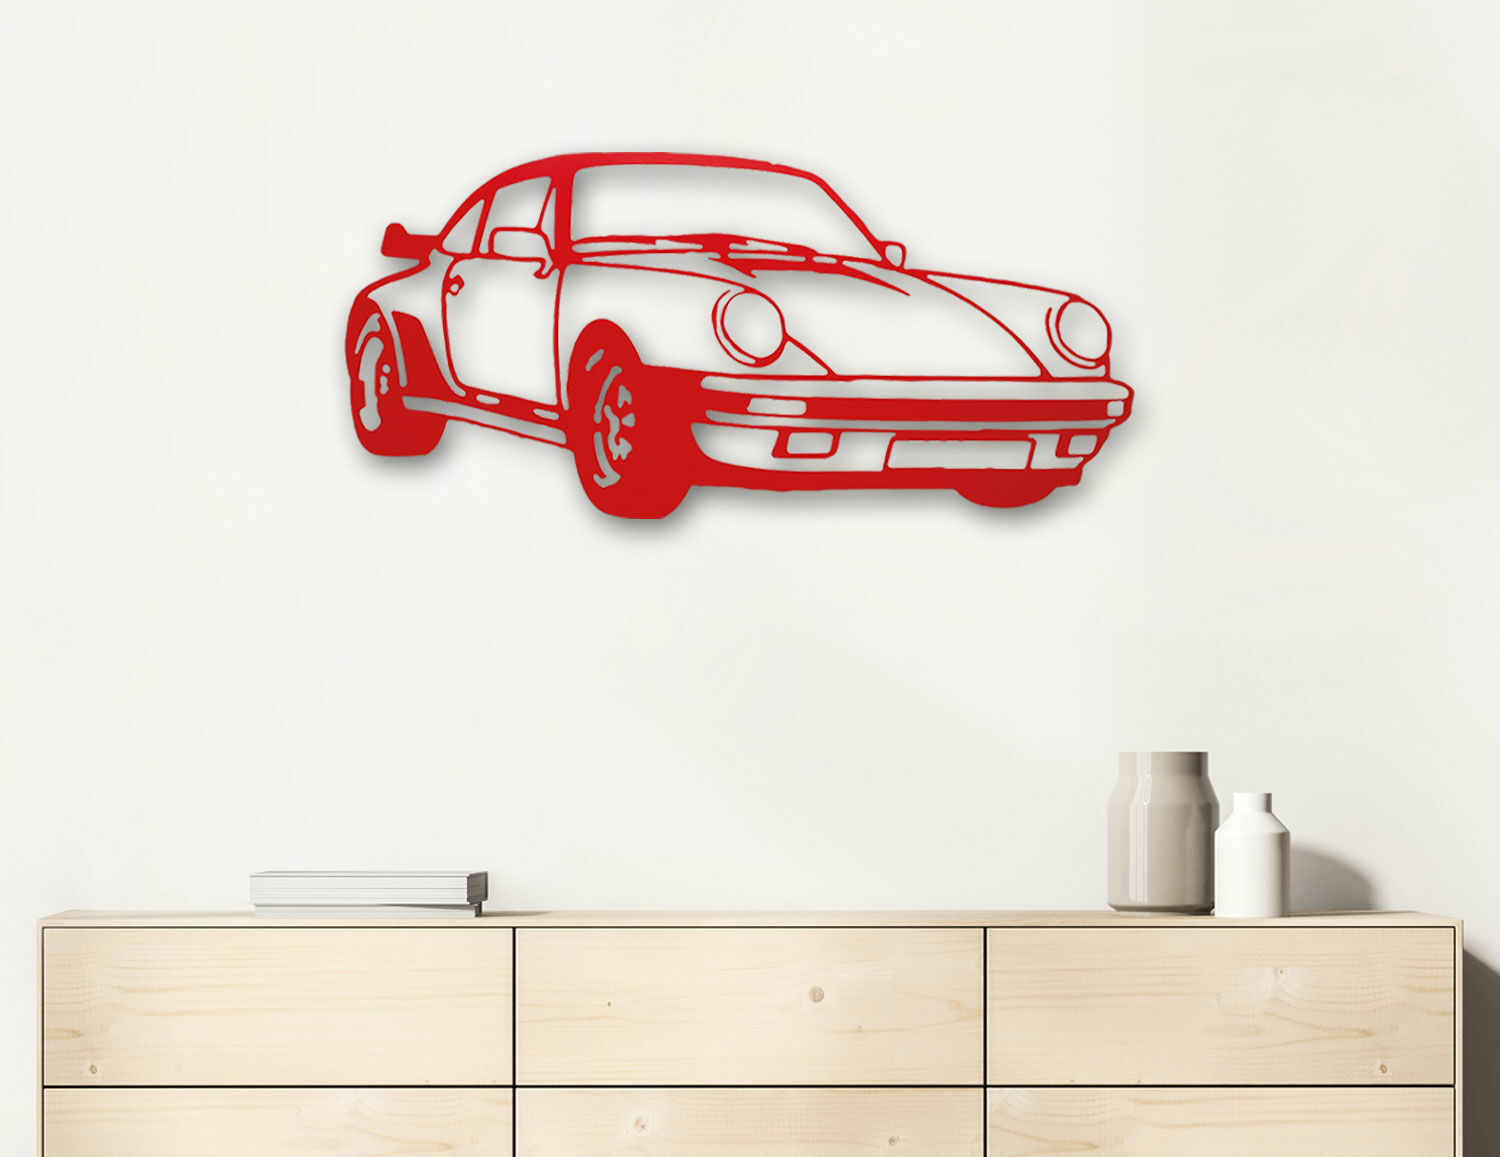 Wandskulptur "Porsche Turbo Rot" (2022) von Jan M. Petersen